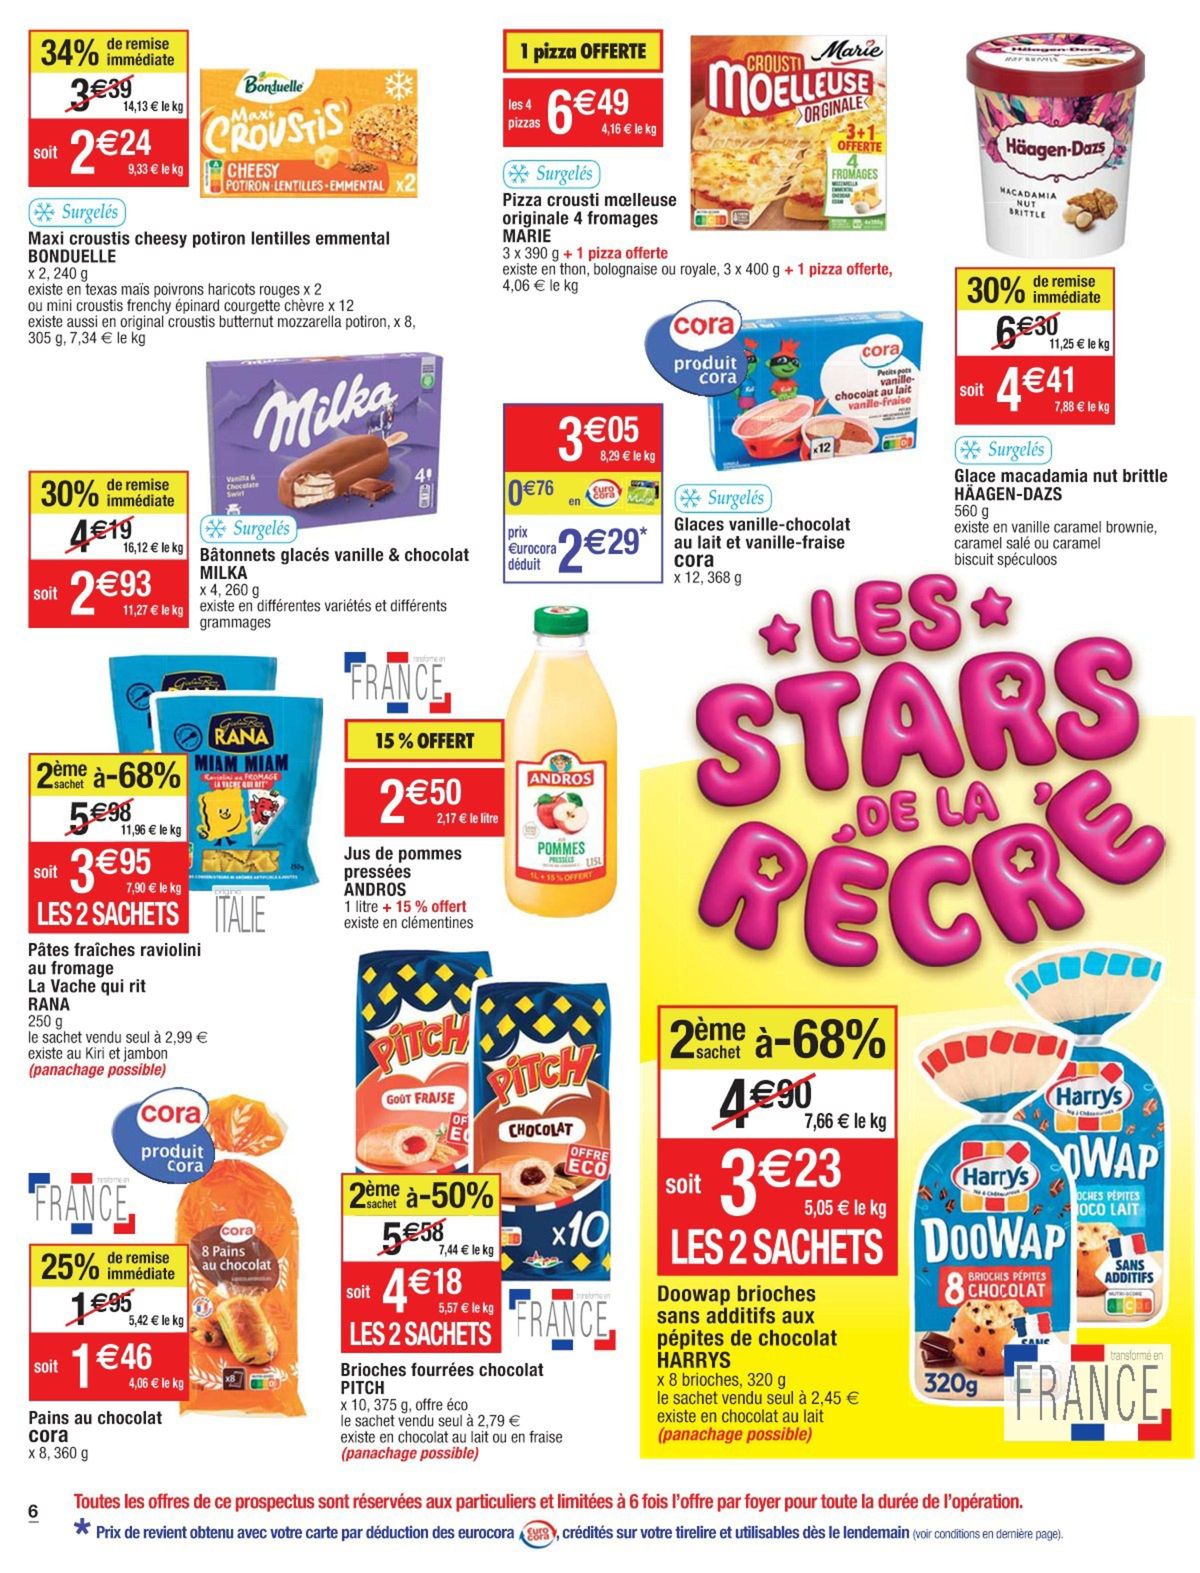 Catalogue Les stars de la récré, page 00038